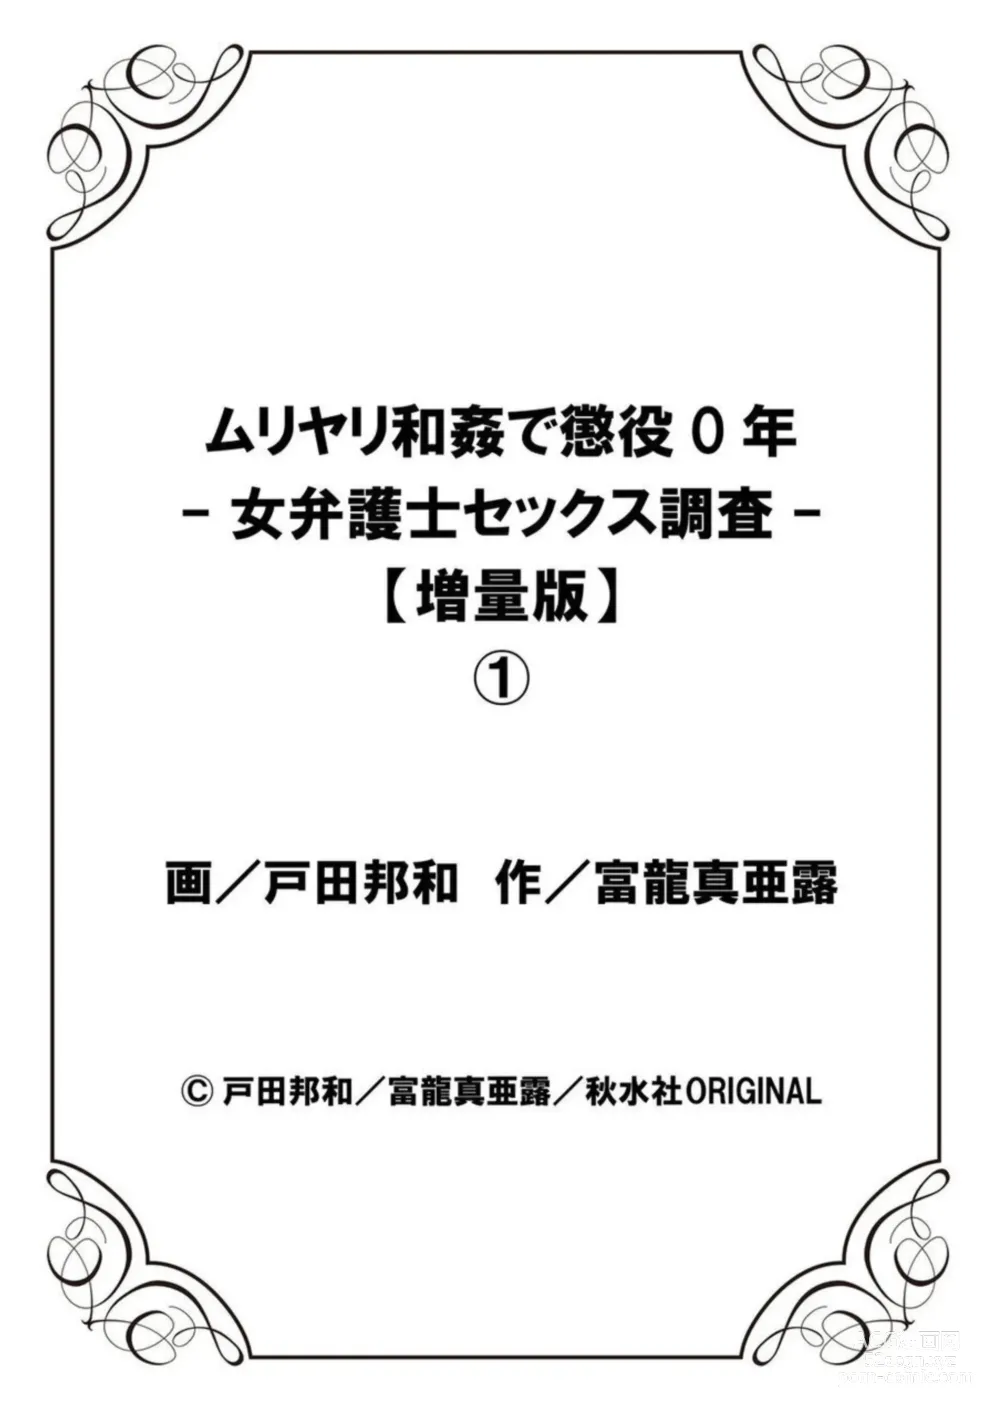 Page 245 of manga Muriyari Wakan de Choueki 0-nen -Onna Bengoshi Sex Chousa- 1